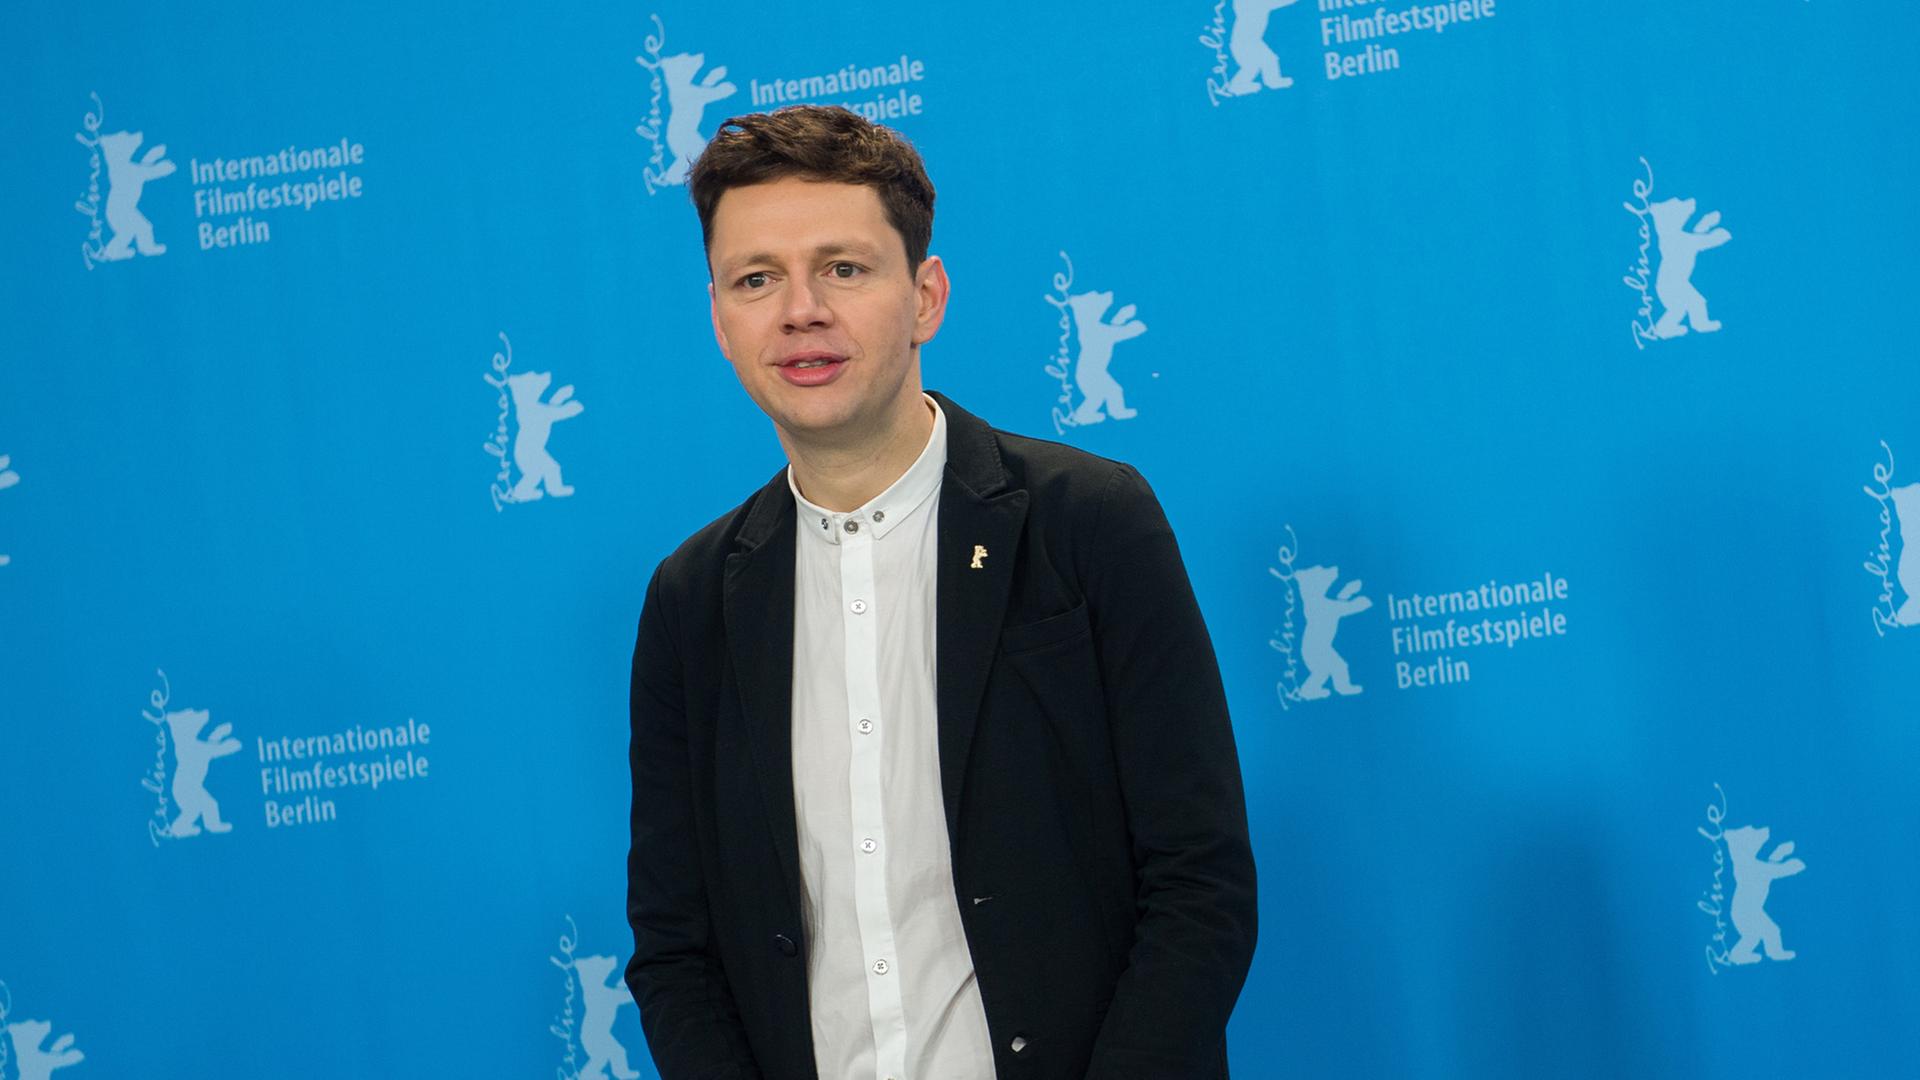 Der Schauspieler Christian Friedel posiert am 12.02.2015 in Berlin während der 65. Internationalen Filmfestspiele beim Fototermin für "Elser" (13 Minutes). Der Film läuft im Wettbewerb der Festspiele.